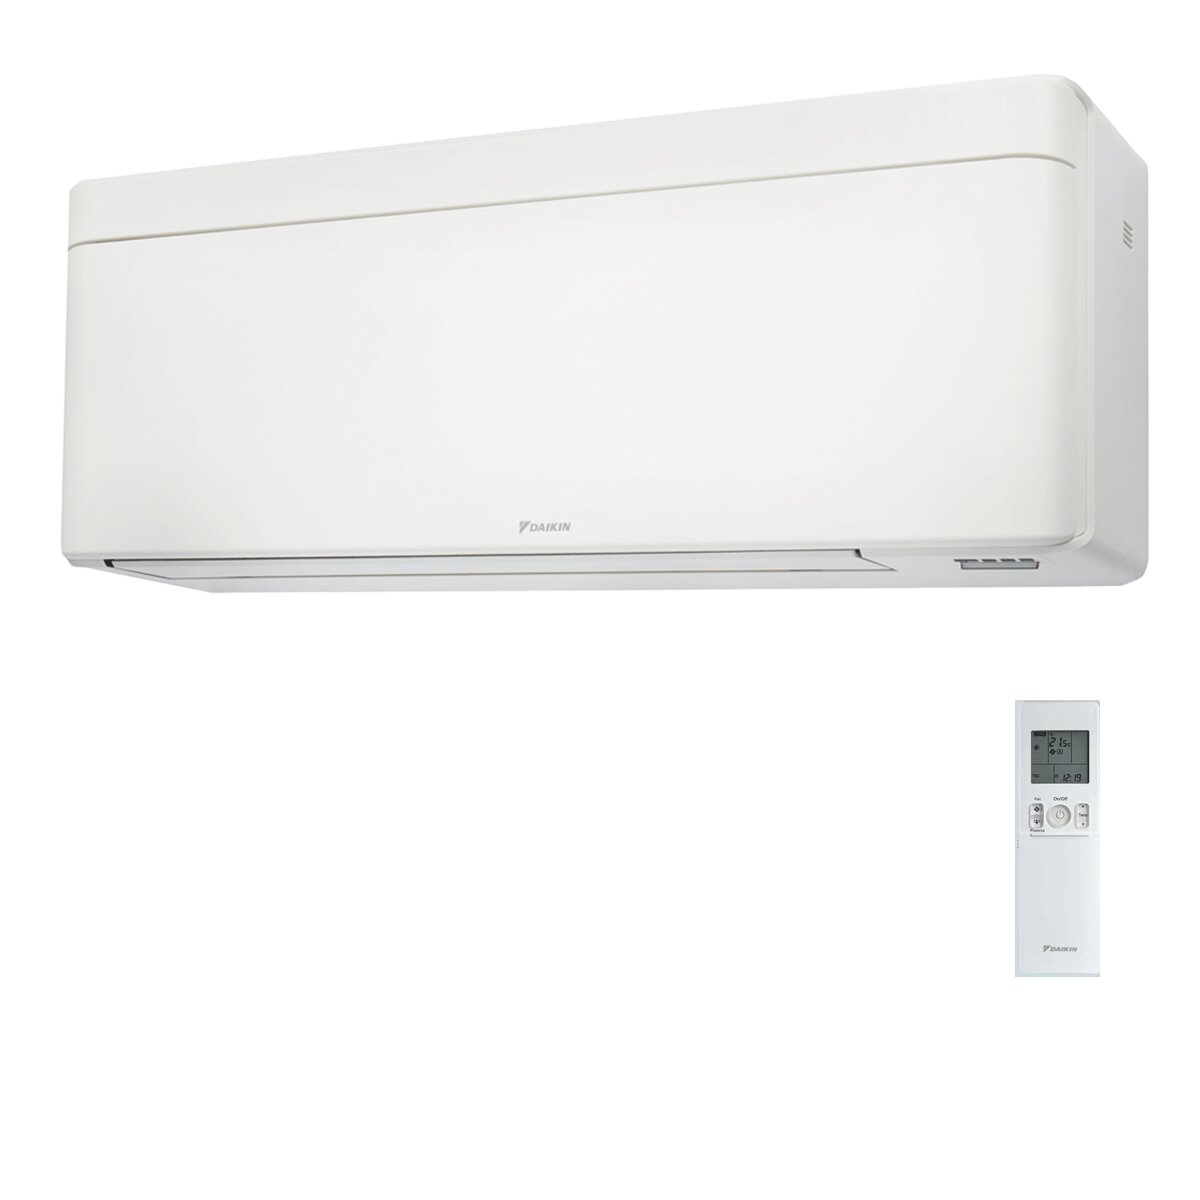 Daikin Stylish White Quadri-Split-Klimaanlage 7000+7000+7000+7000 BTU Inverter A++ WLAN-Außeneinheit 6,8 kW